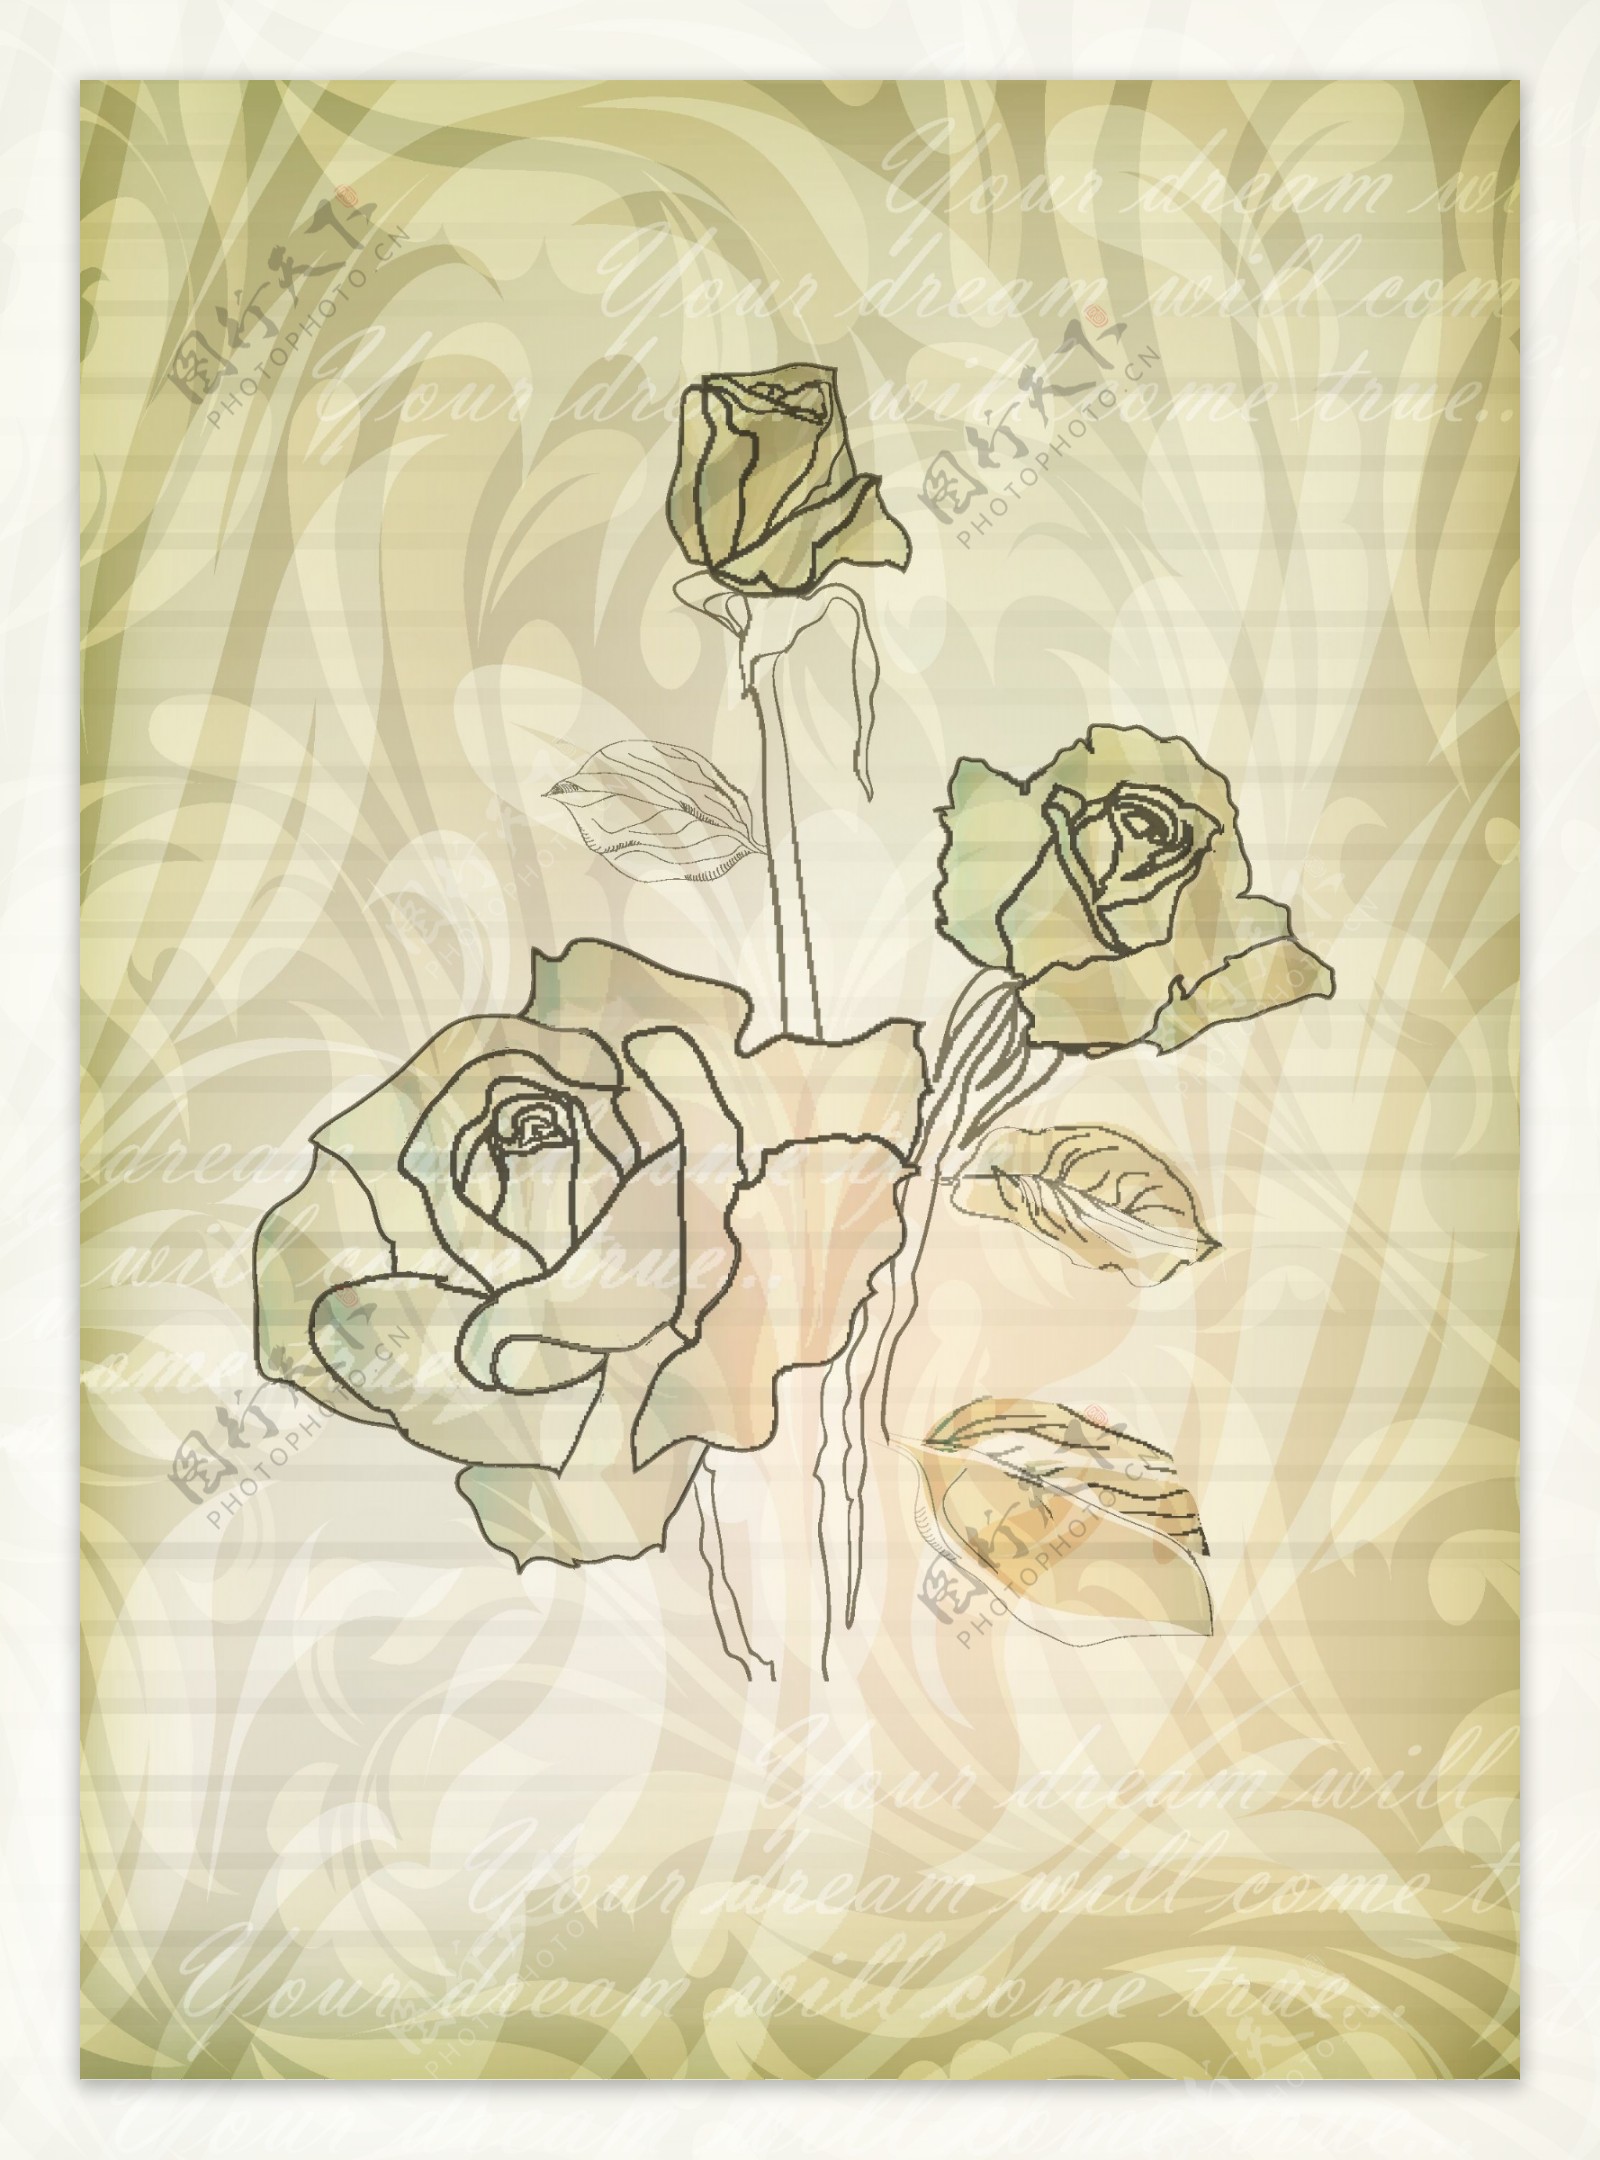 淡雅玫瑰花纹背景矢量素材4